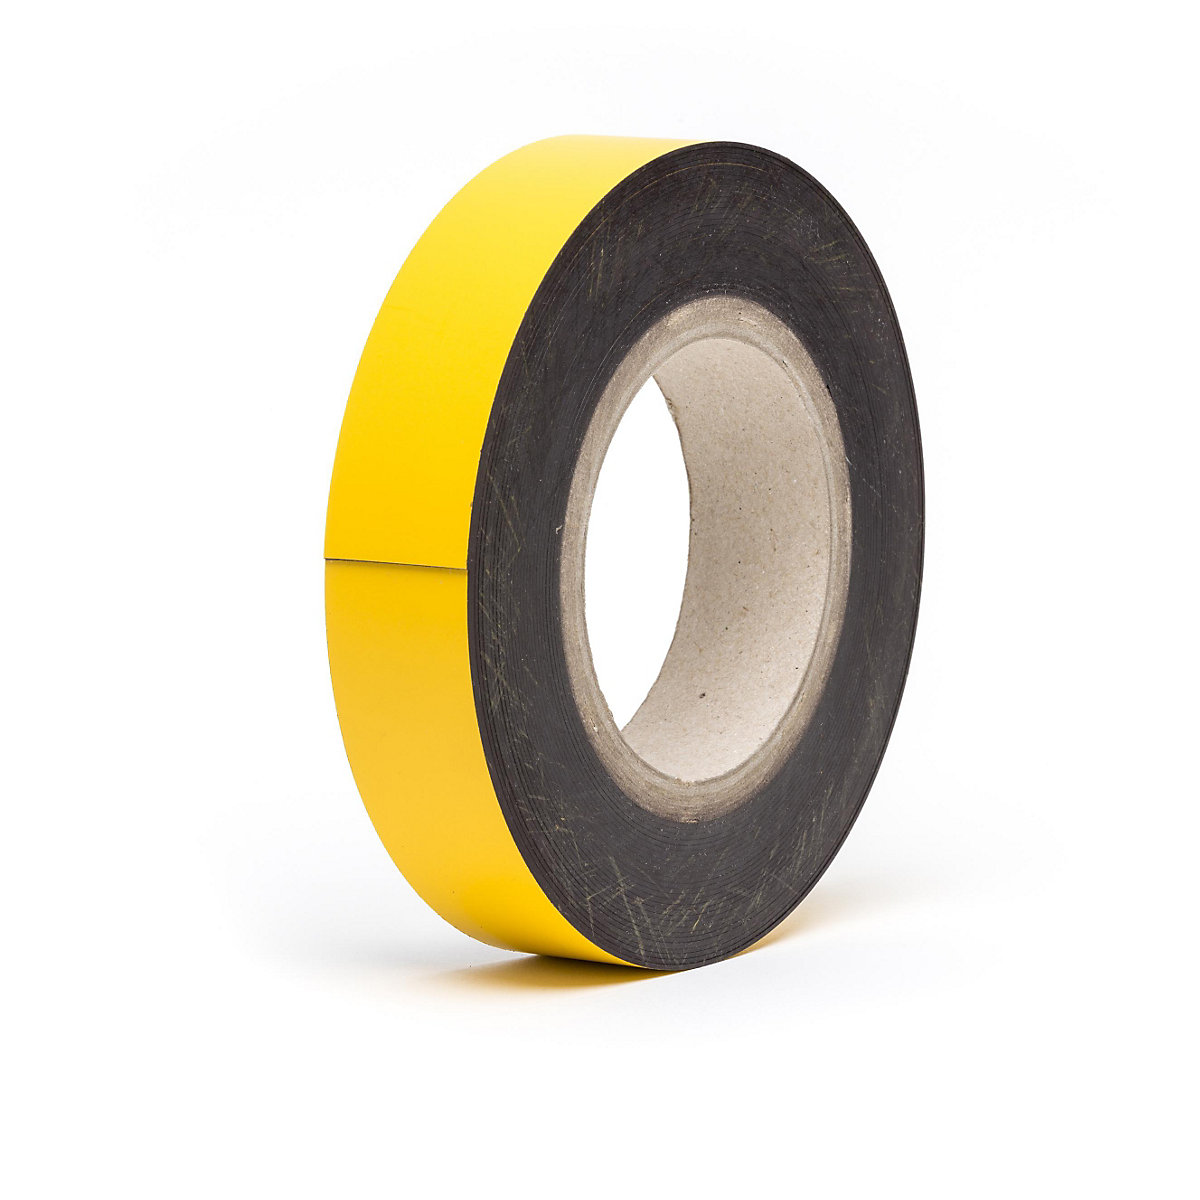 Rótulos magnéticos para almacén, mercancía en rollo, amarillo, altura 40 mm, longitud de rollo 10 m-10